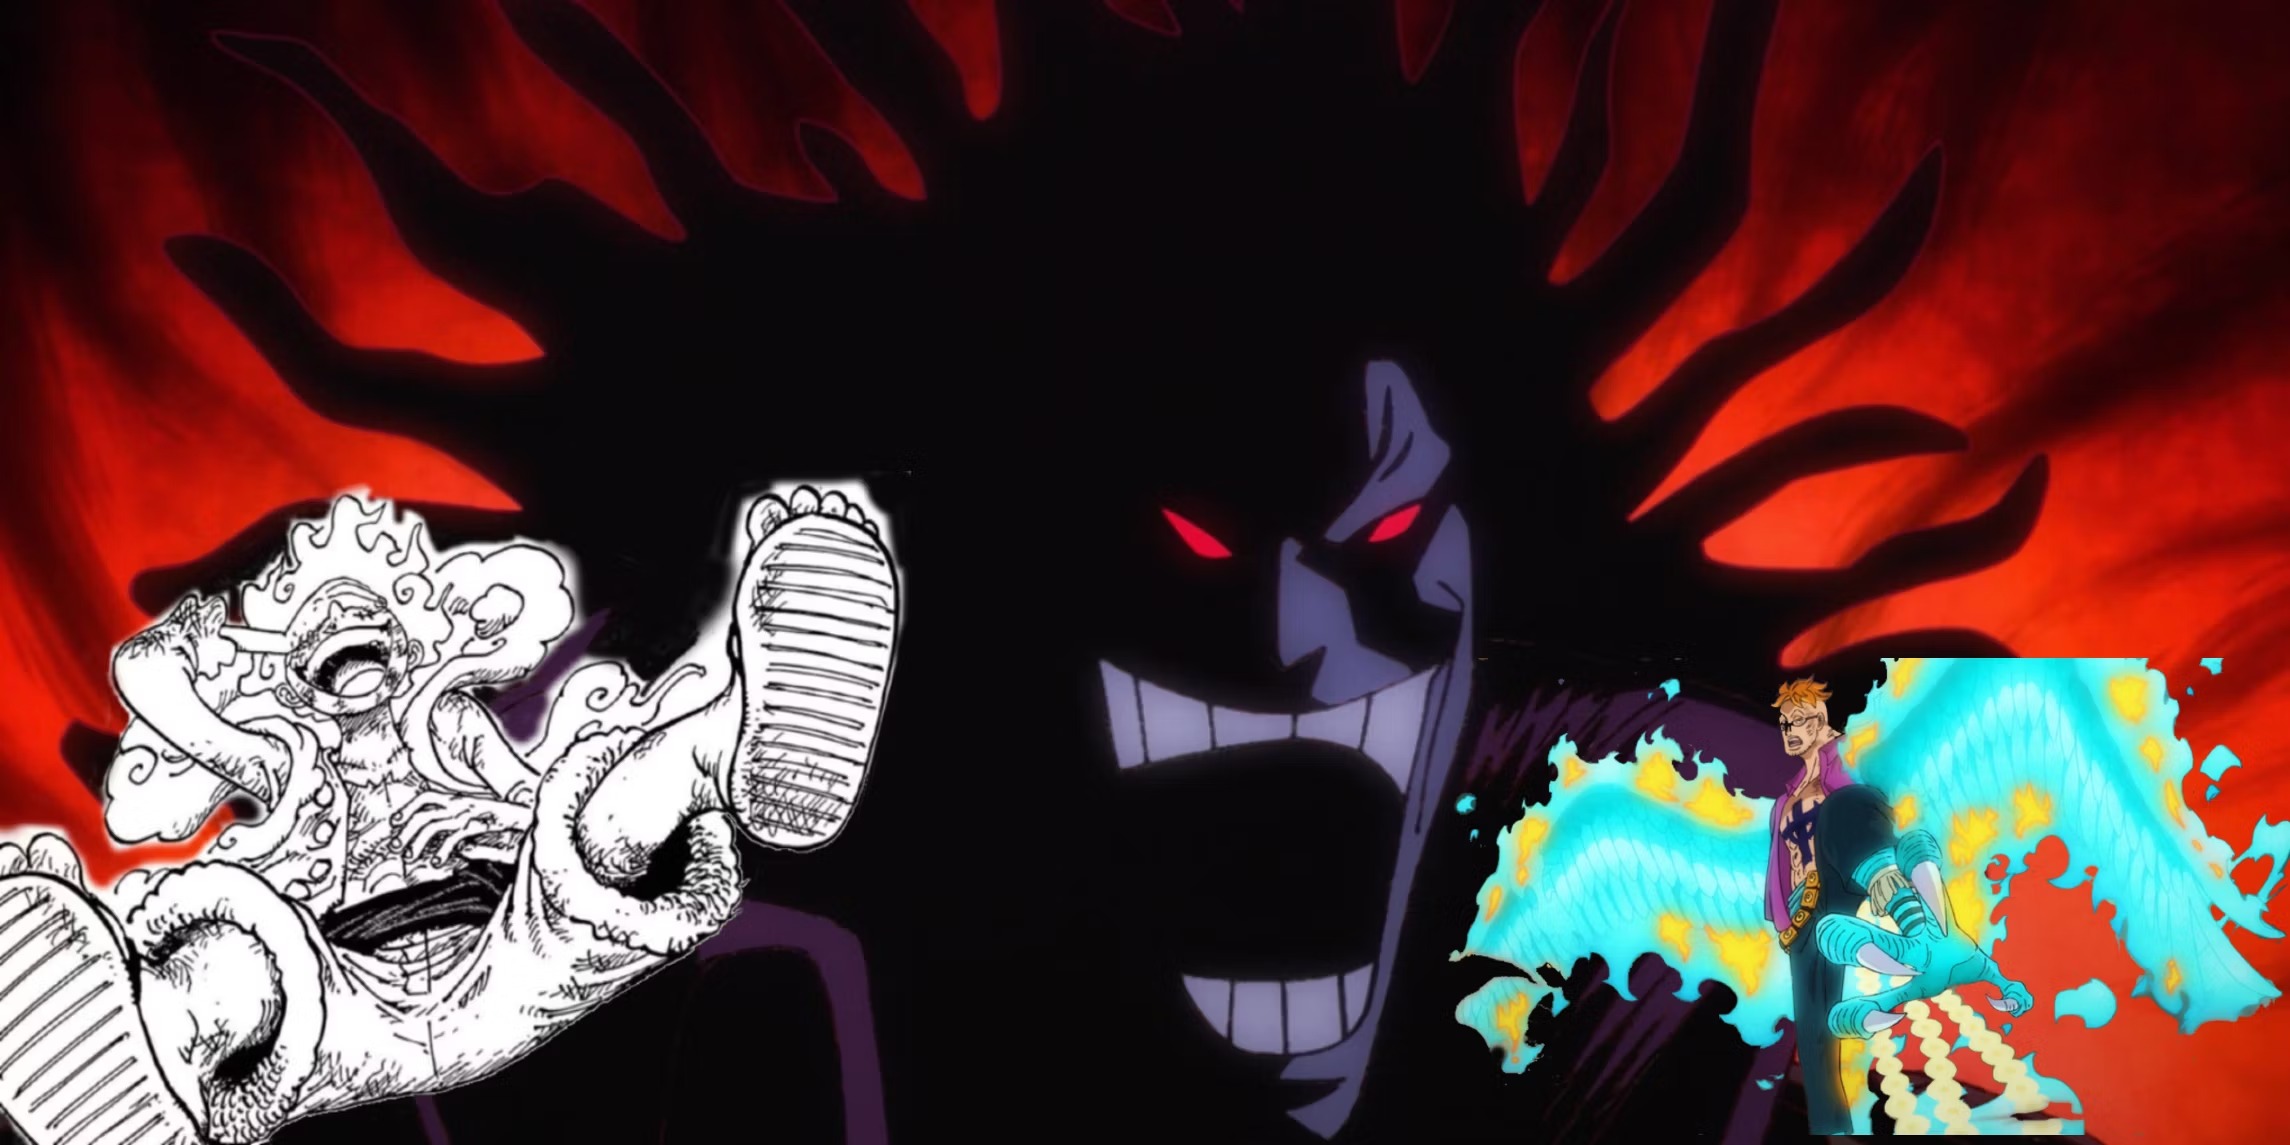 Teoria de One Piece sugere que todas as Zoans míticas vieram de God Valley